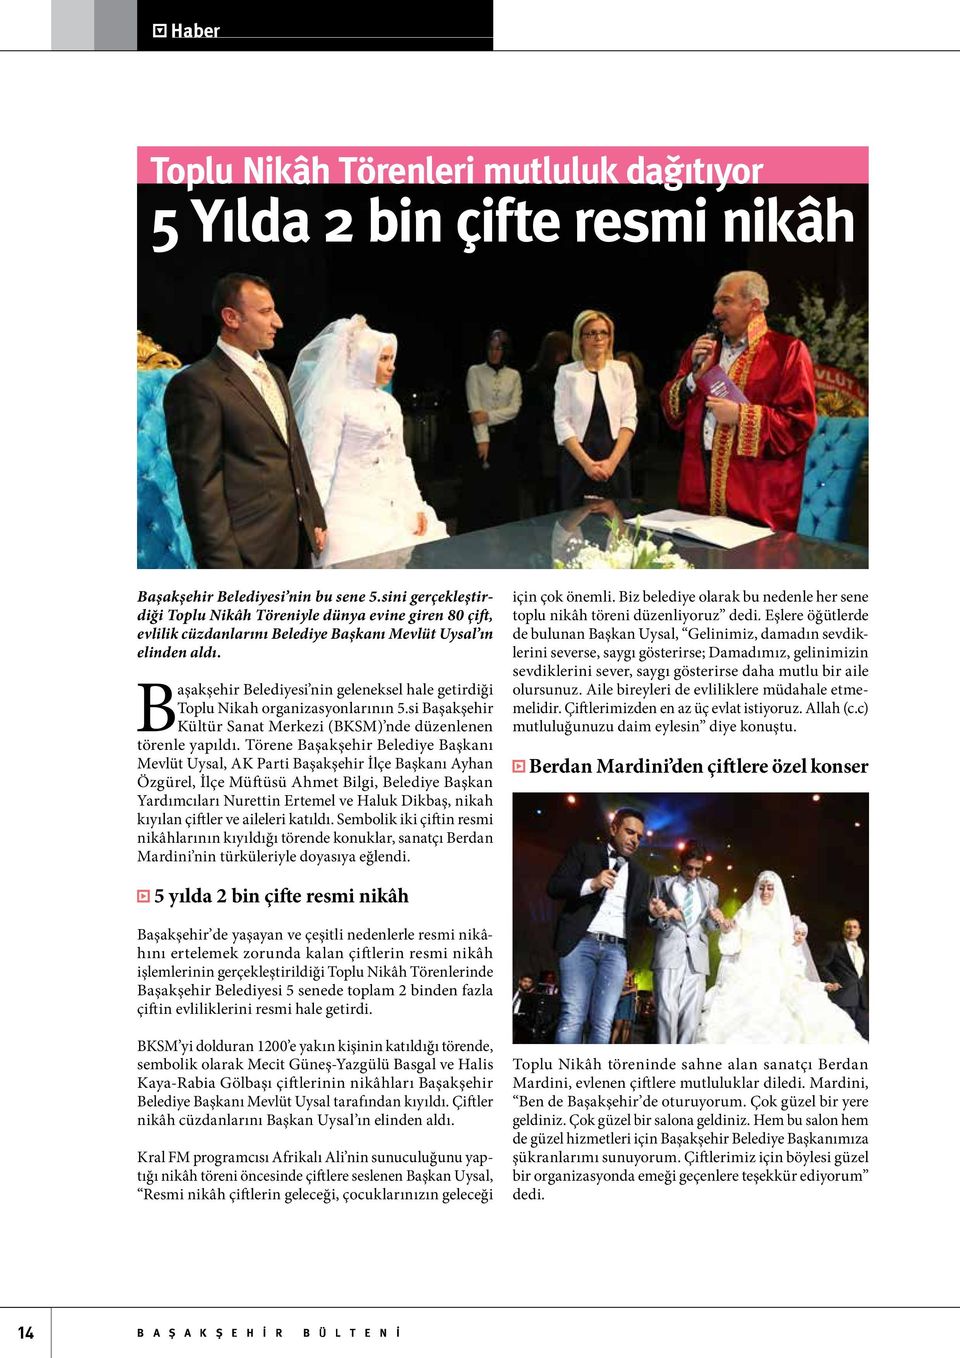 Başakşehir Belediyesi nin geleneksel hale getirdiği Toplu Nikah organizasyonlarının 5.si Başakşehir Kültür Sanat Merkezi (BKSM) nde düzenlenen törenle yapıldı.